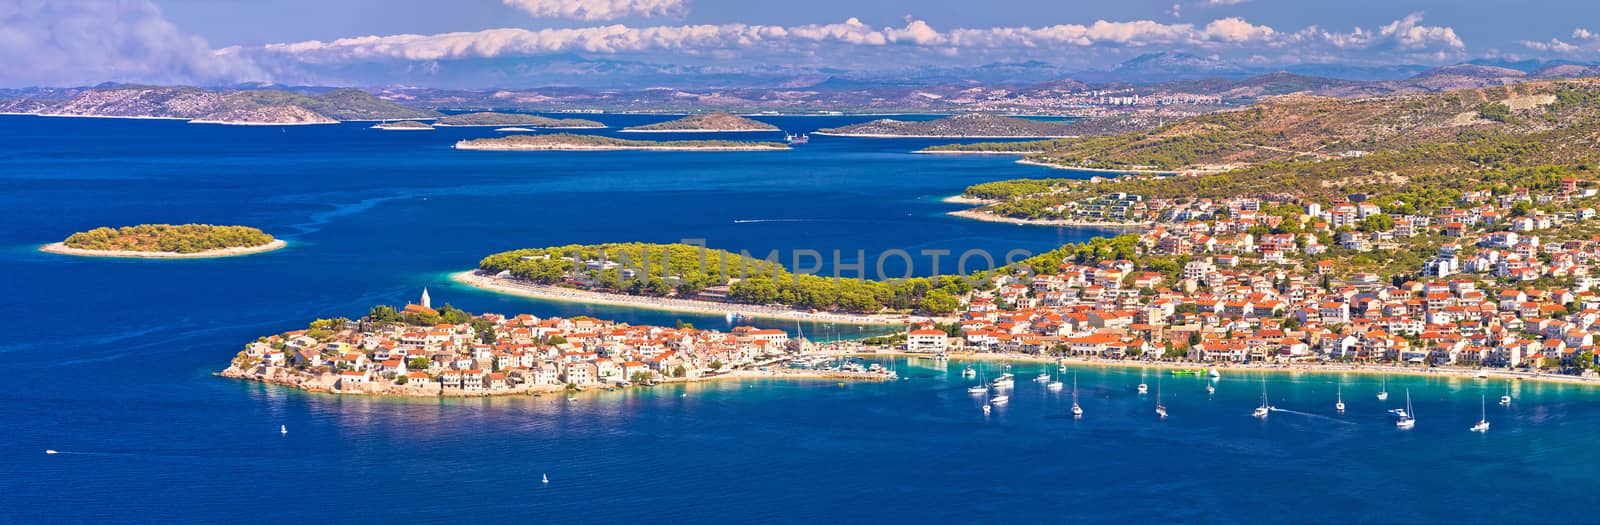 Adriatic tourist destination of Primosten aerial panoramic archipelago view, with cruiser ship, Dalmatia, Croatia